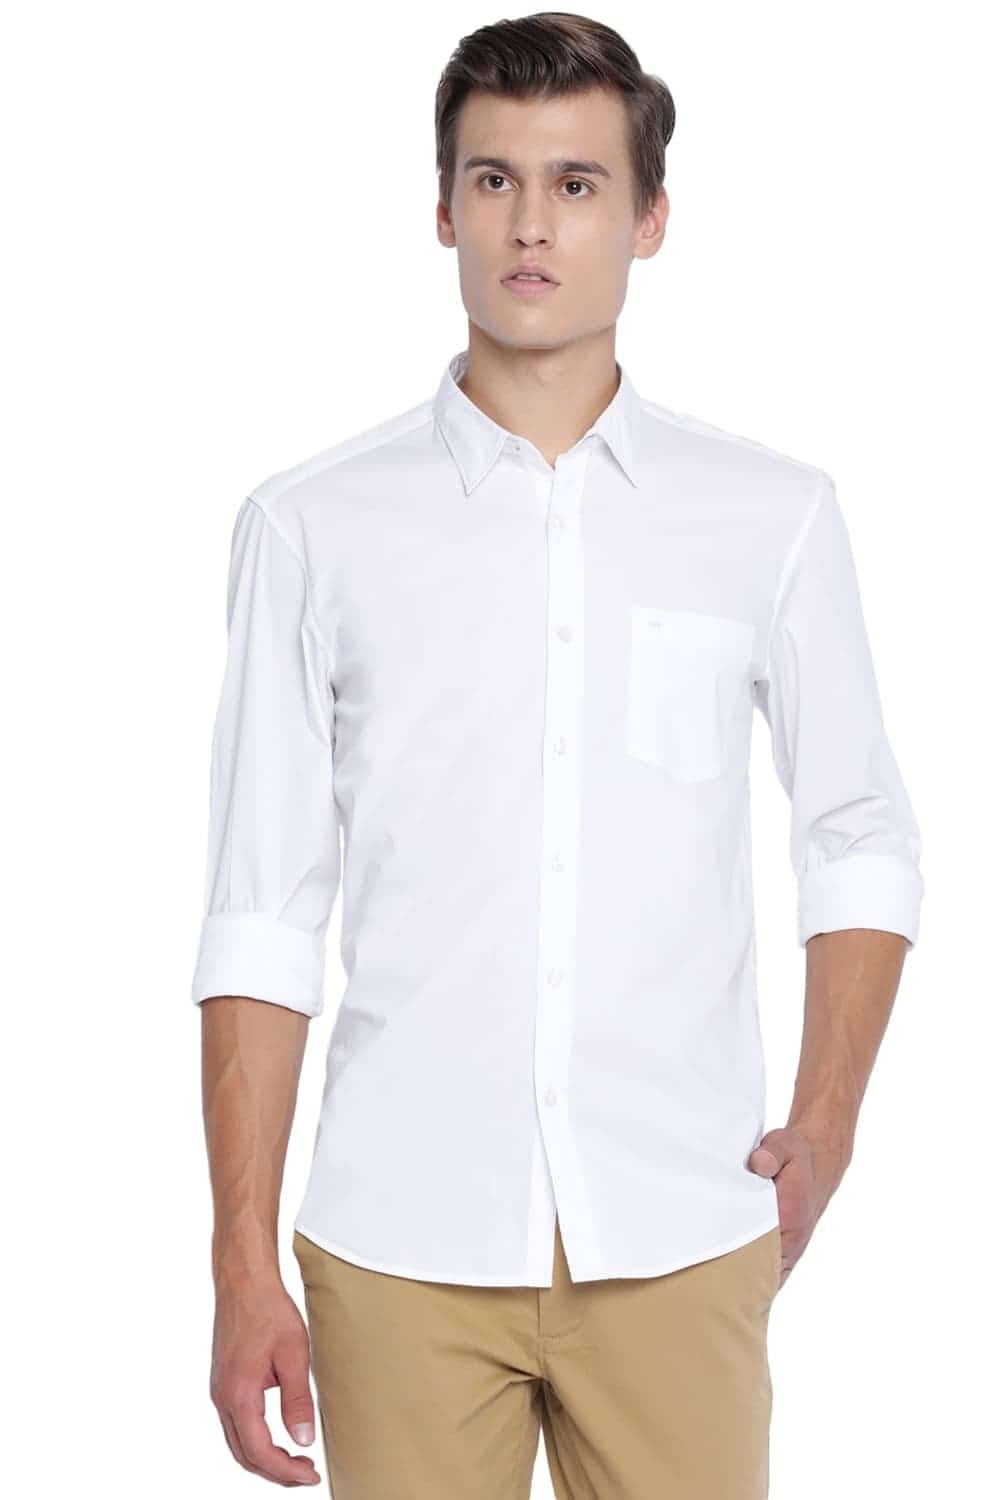 Basics | Basics Slim Fit Cloud White Stretch Shirt